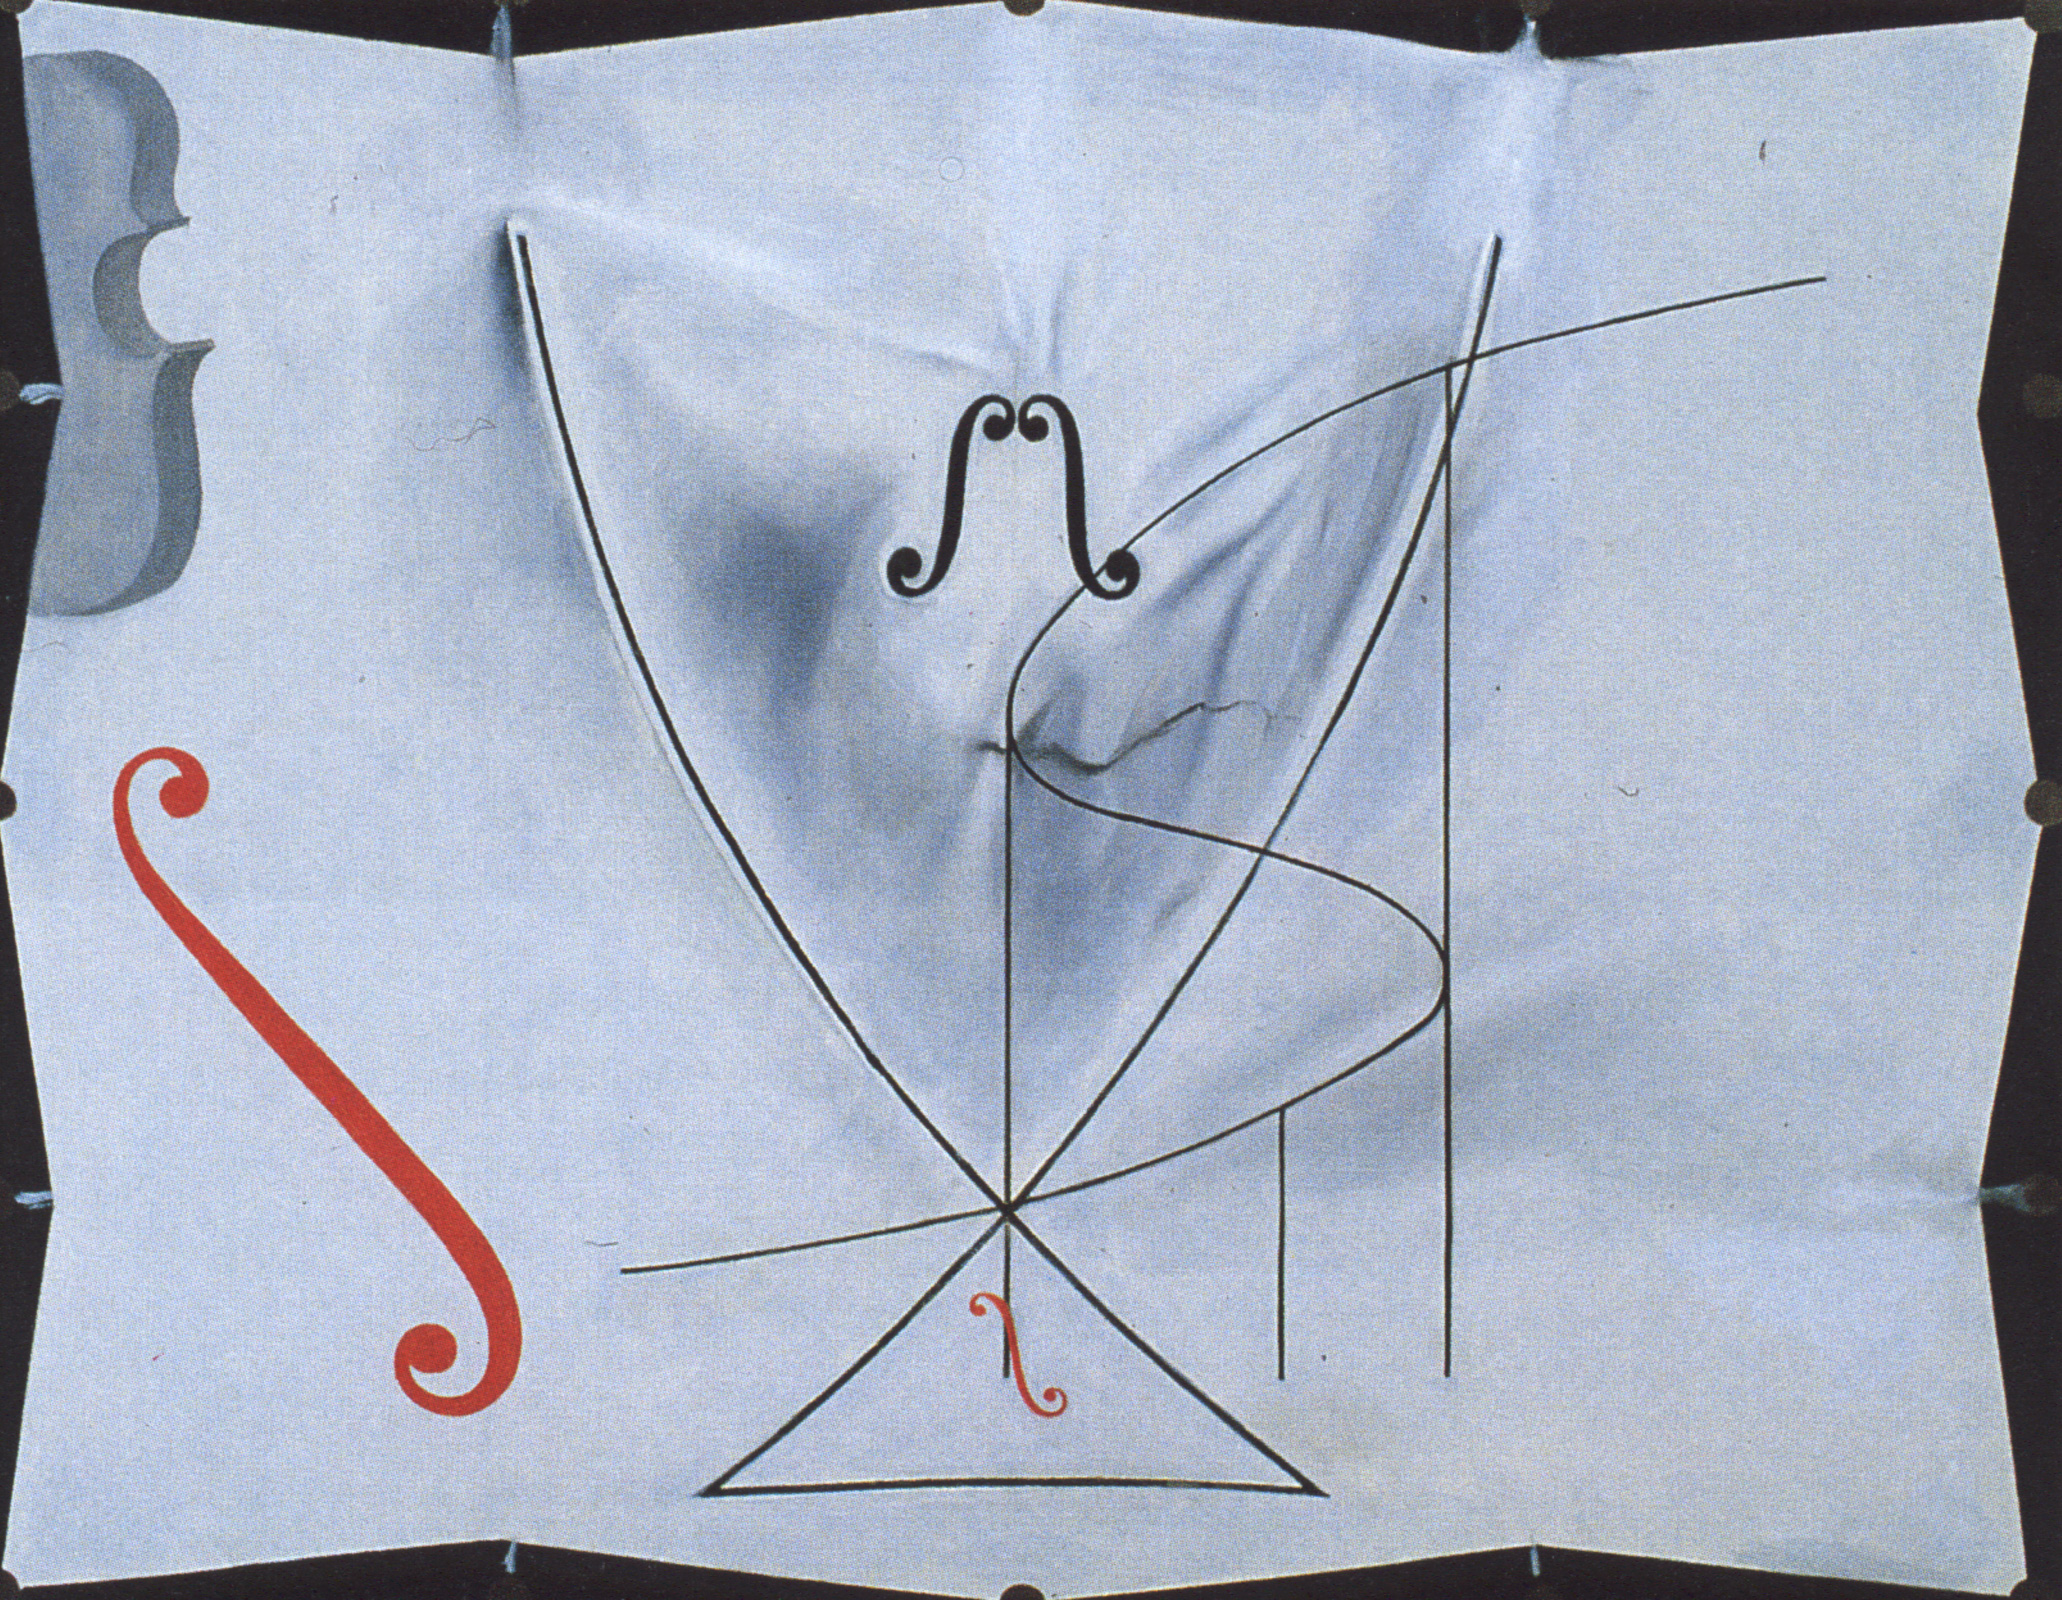 De Zwaluwstaart by Salvador Dali - 1983 - 73 x 92.2 cm 